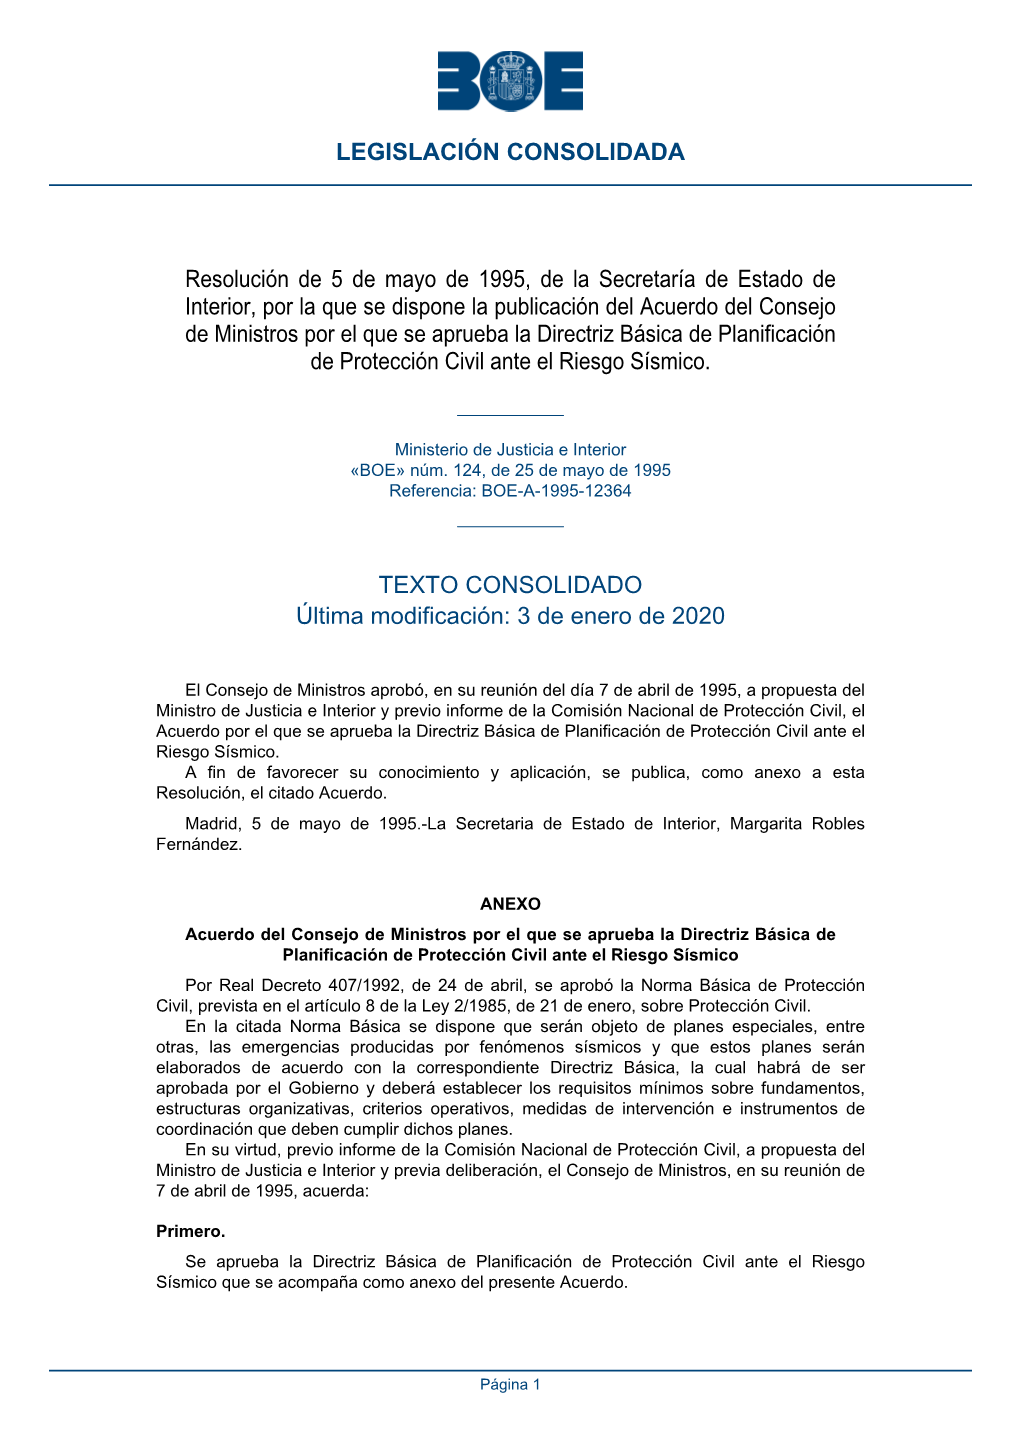 Resolución De 5 De Mayo De 1995, De La Secretaría De Estado De Interior, Por La Que Se Dispone La Publicación Del Acuerdo